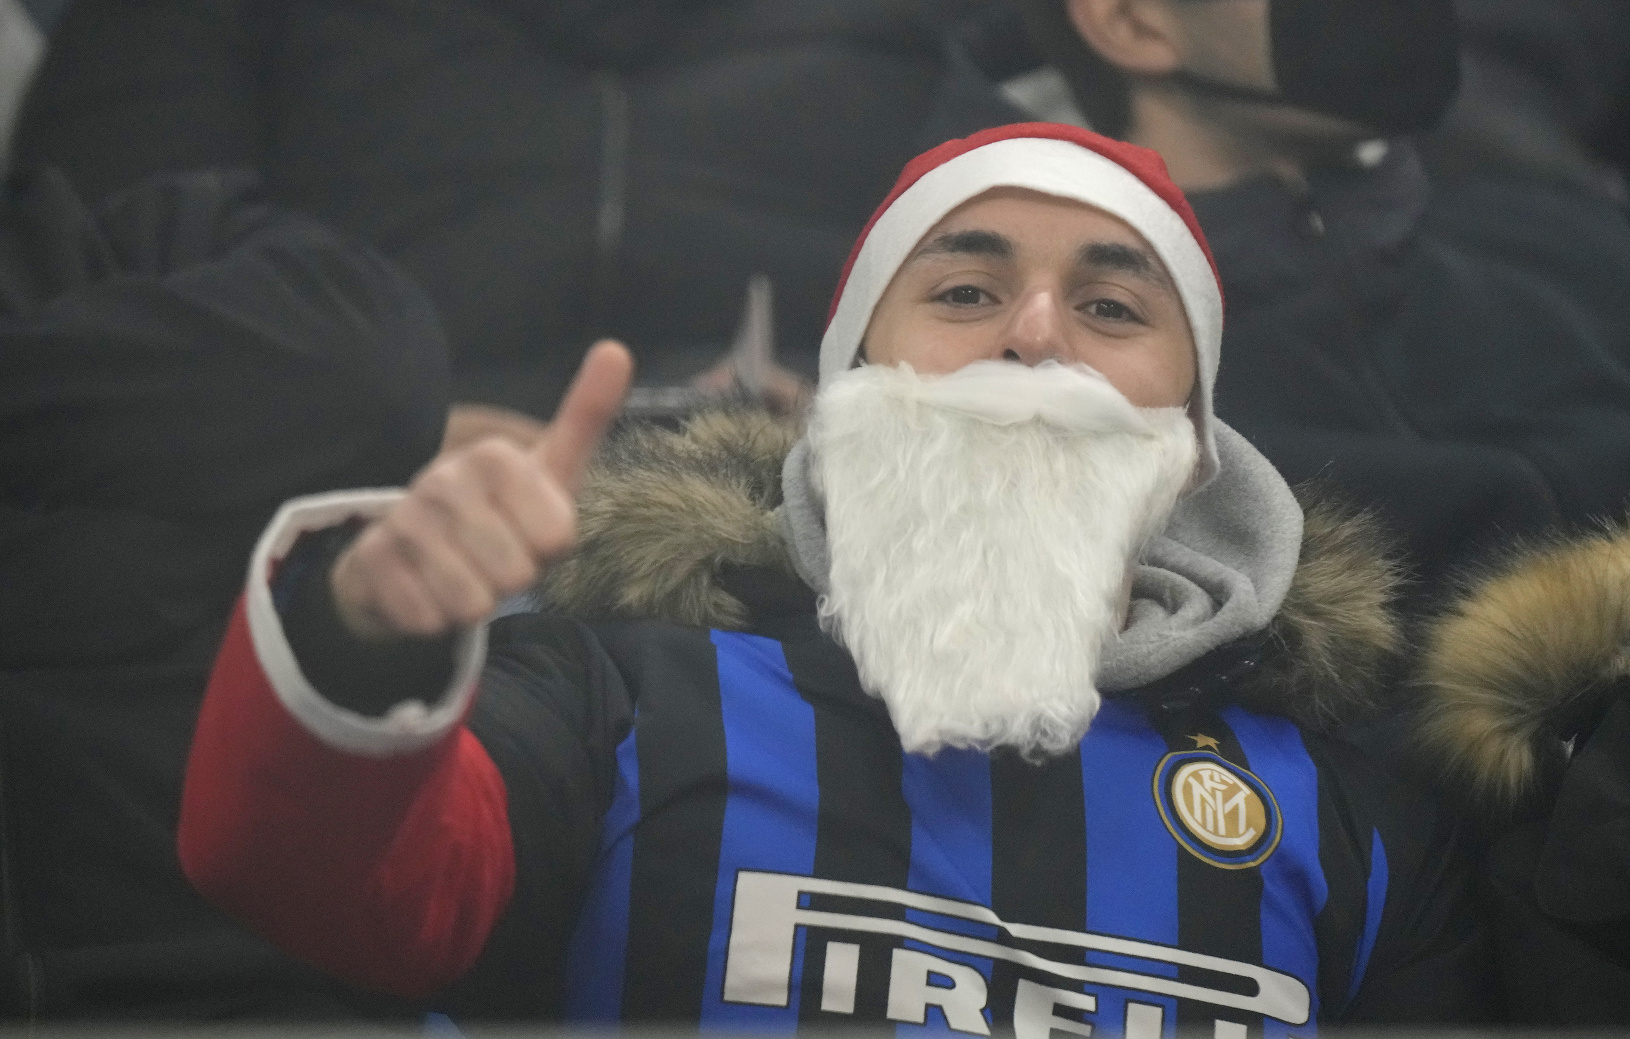 Milánsky Santa Claus v